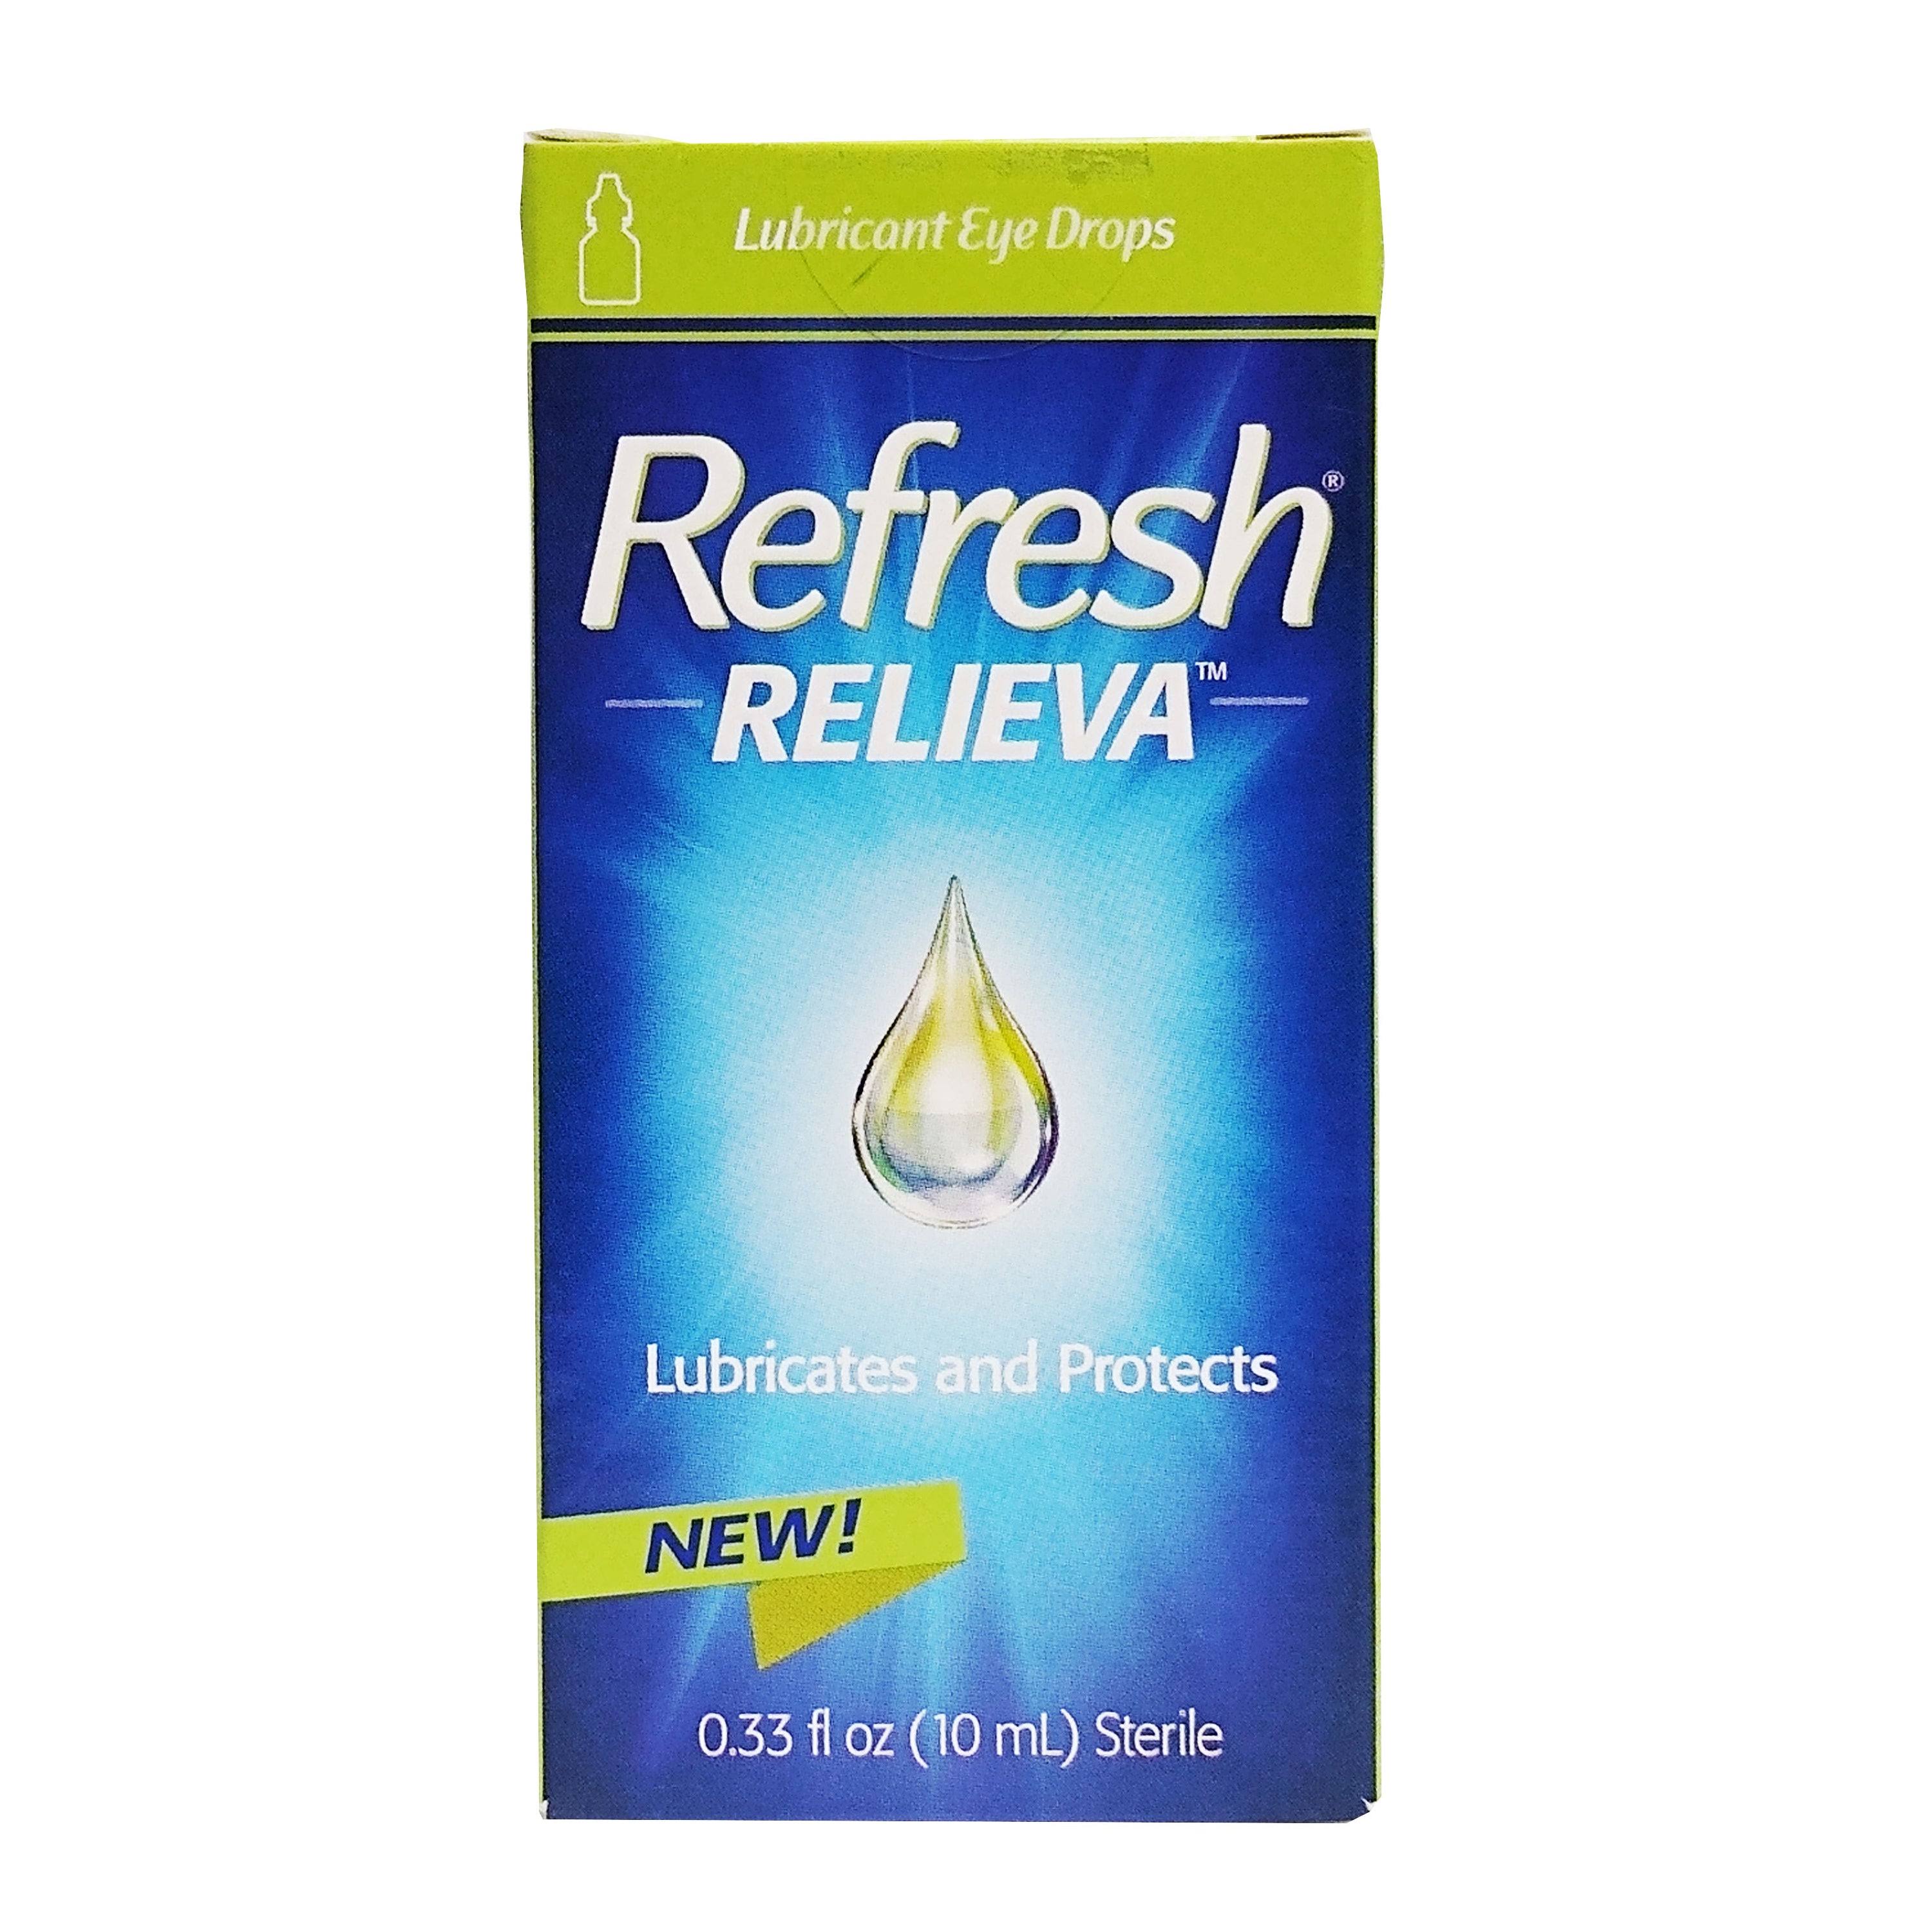 Refresh Relieva Eye Drops, Lubricant - 0.33 fl oz